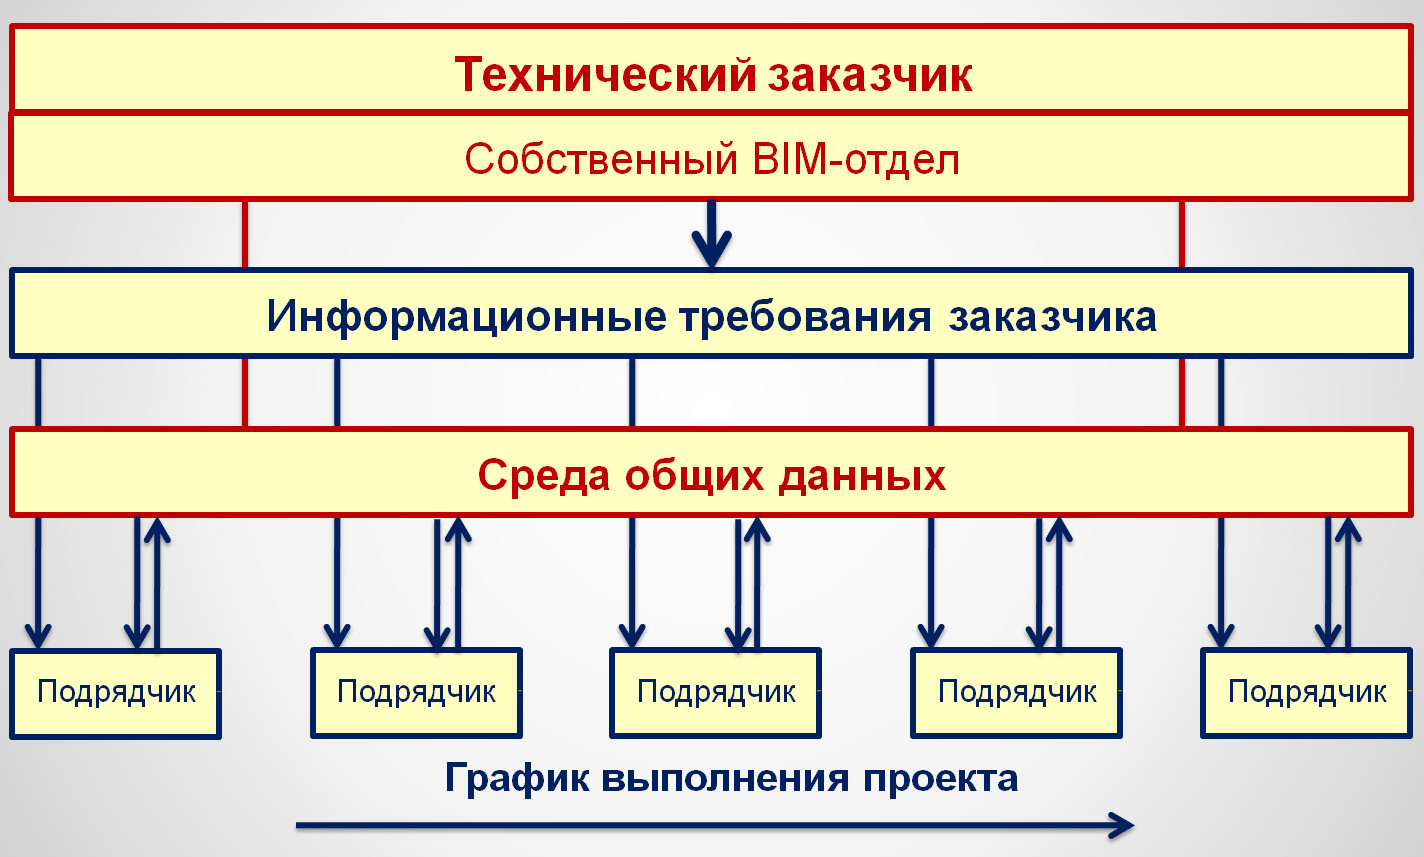 Роль технического заказчика в BIM